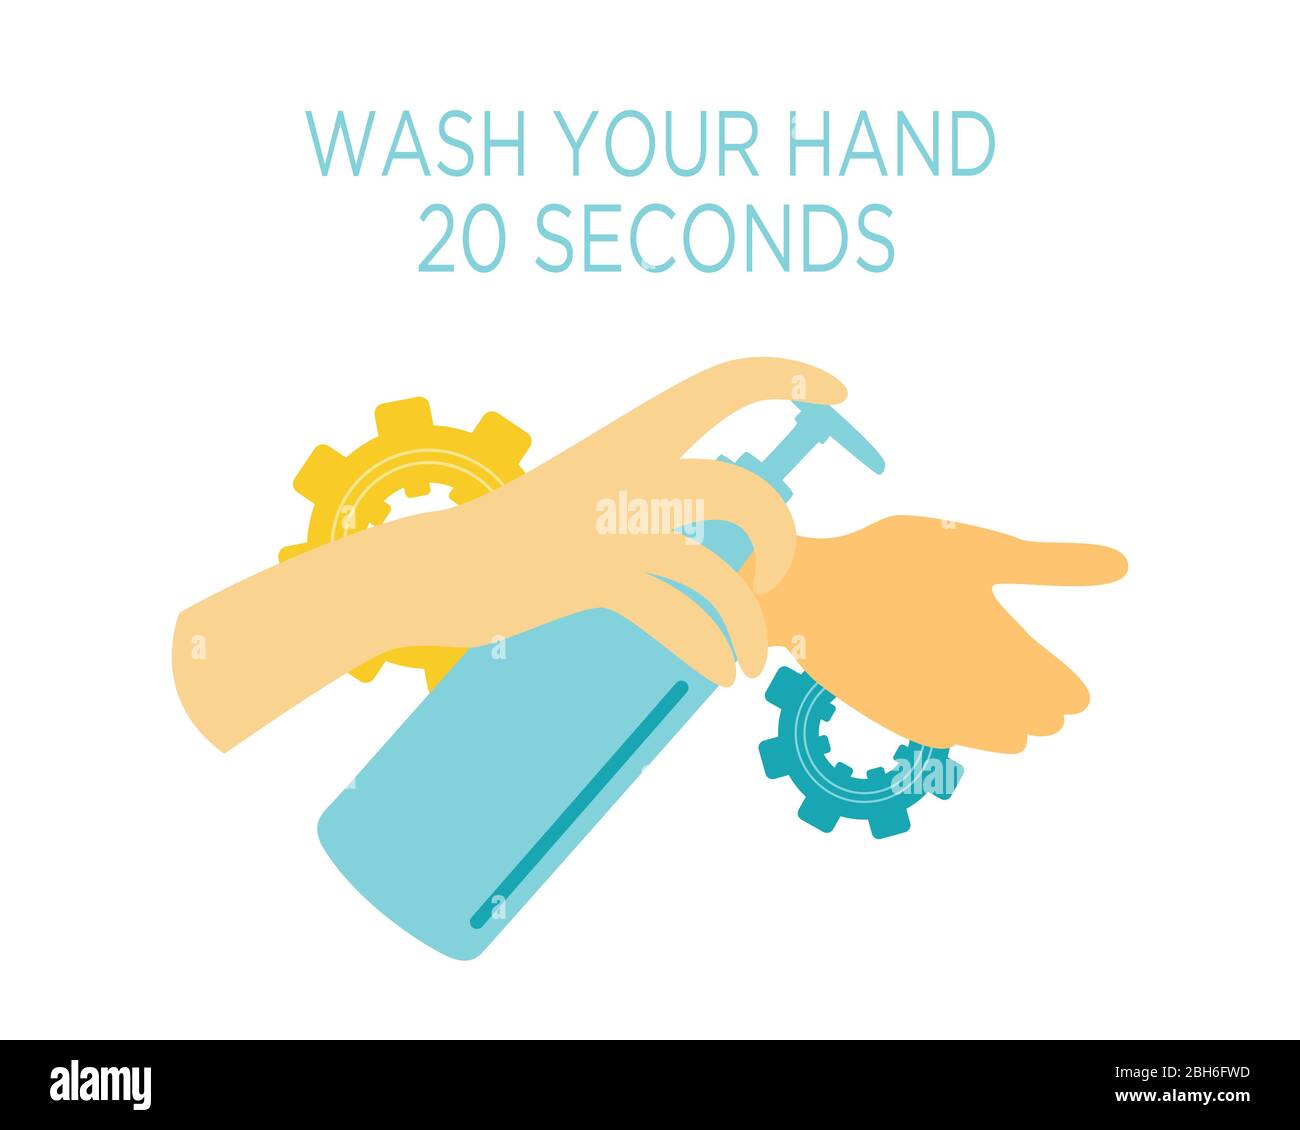 Flache Darstellung des Händewaschens für 20 Sekunden, um die Ausbreitung des Corona-Virus 19 in blau und gelb zu verhindern. Stock Vektor